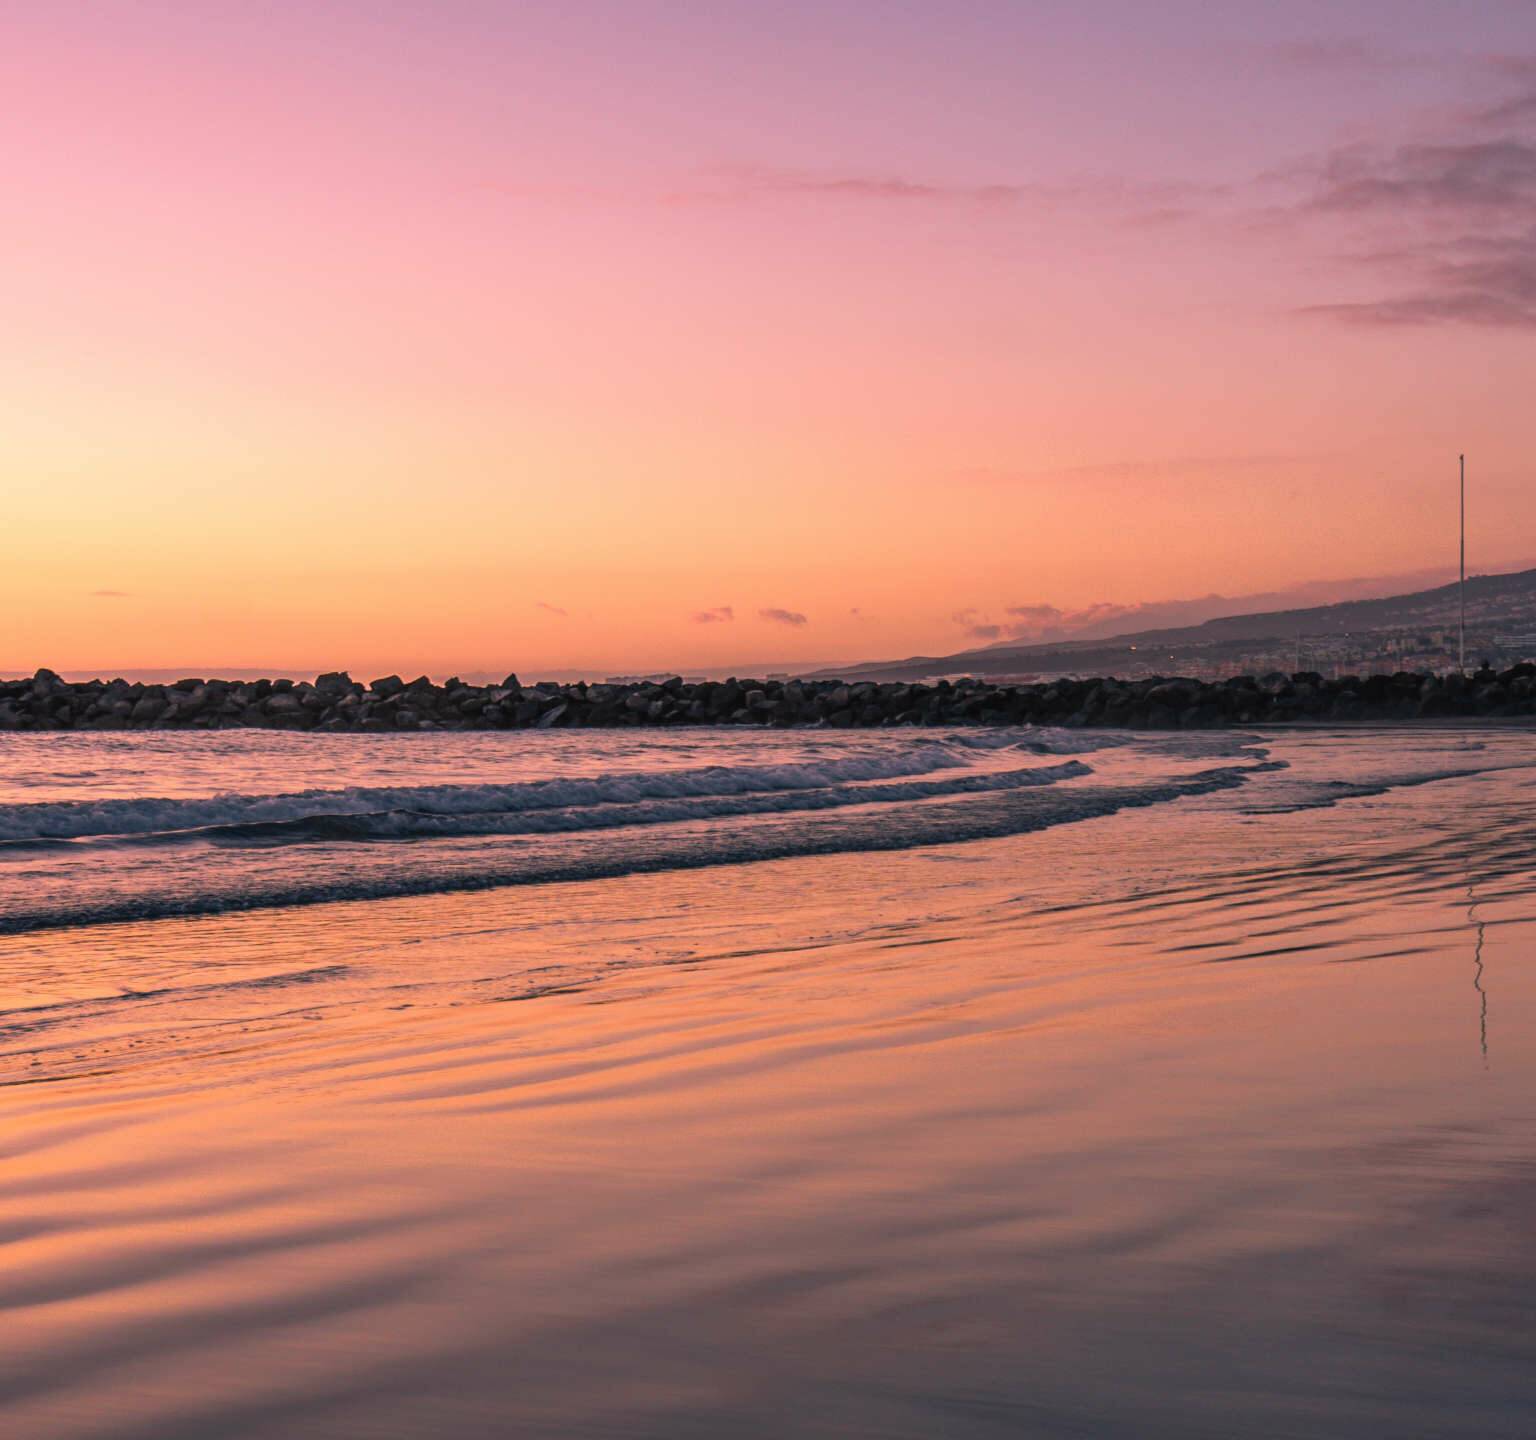 Ein unvergessliches Erlebnis auf Teneriffa: Zum Sonnenuntergang färbt sich der Himmel über dem Strand von Playa de Las Americas in den schönsten Rottönen.